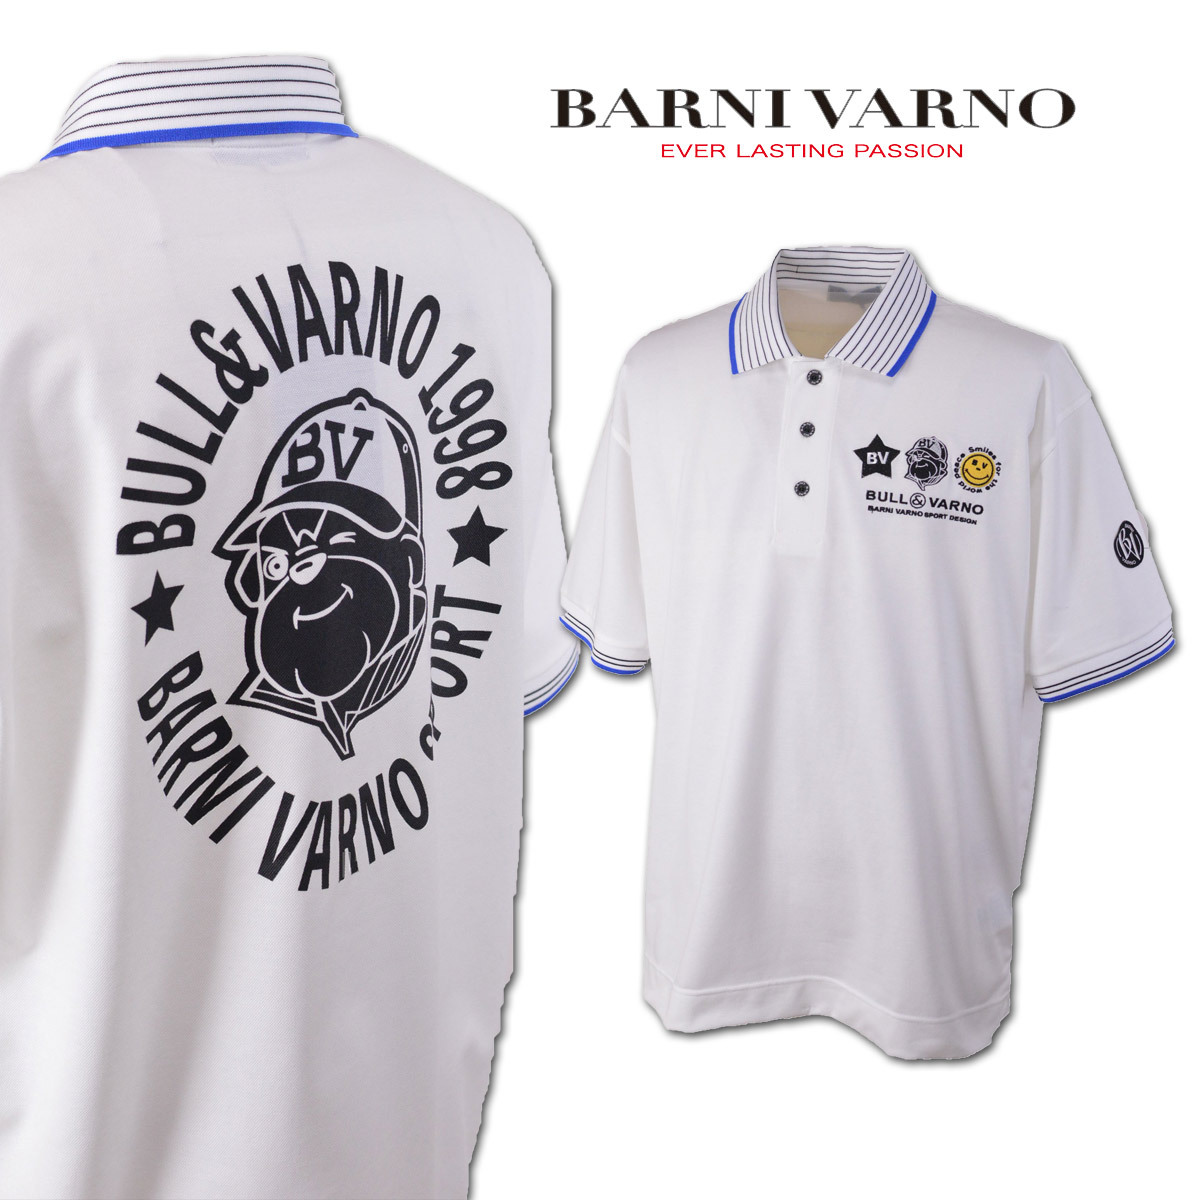 バーニヴァーノ 半袖ポロシャツ (L) メンズ BARNI VARNO バーニバーノ kpl3926-01 :kpl3926-01:ROUND  OVER 通販 